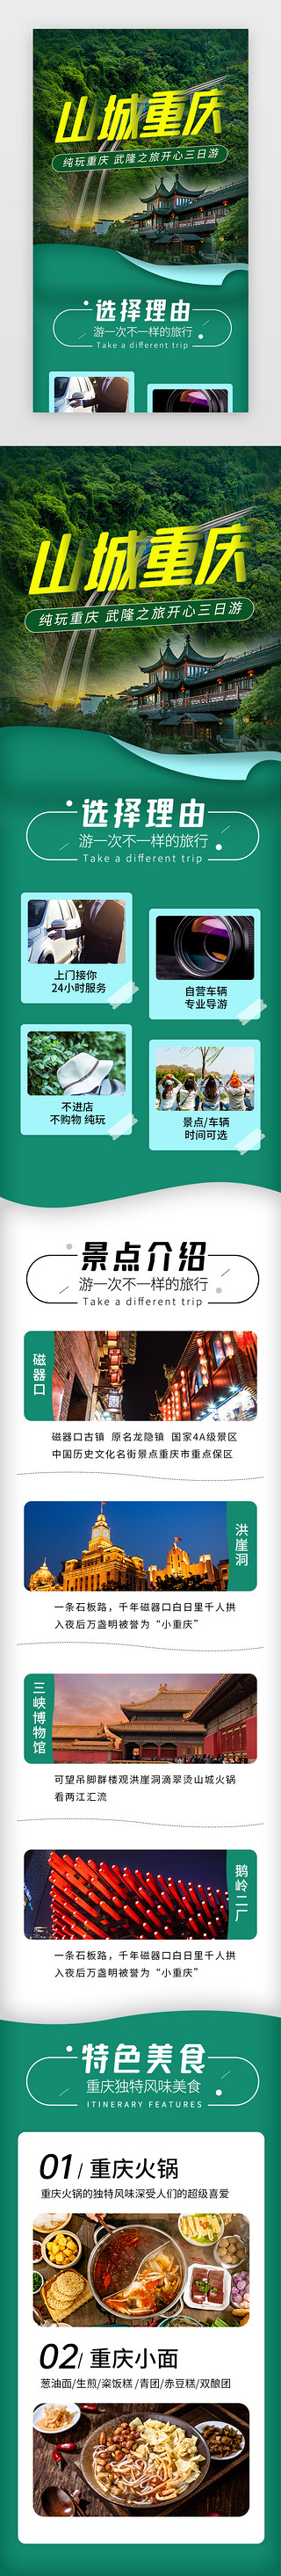 旅游宣传单模板UI设计素材_山城重庆旅游景点介绍H5长图